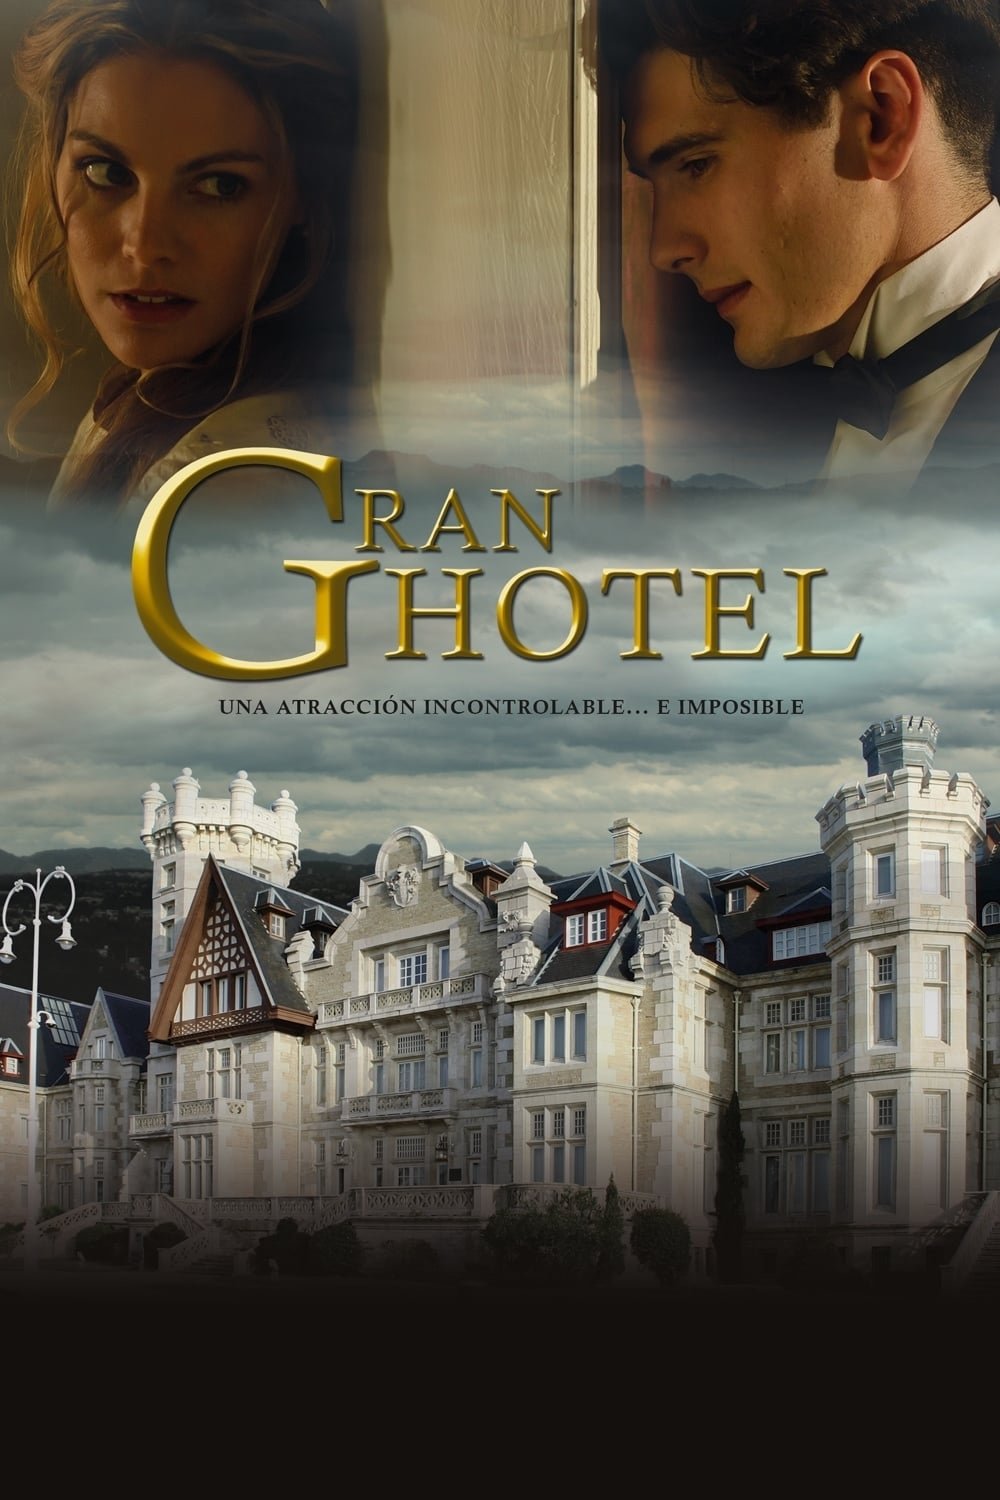 Grand hôtel (2011) - Saison 2